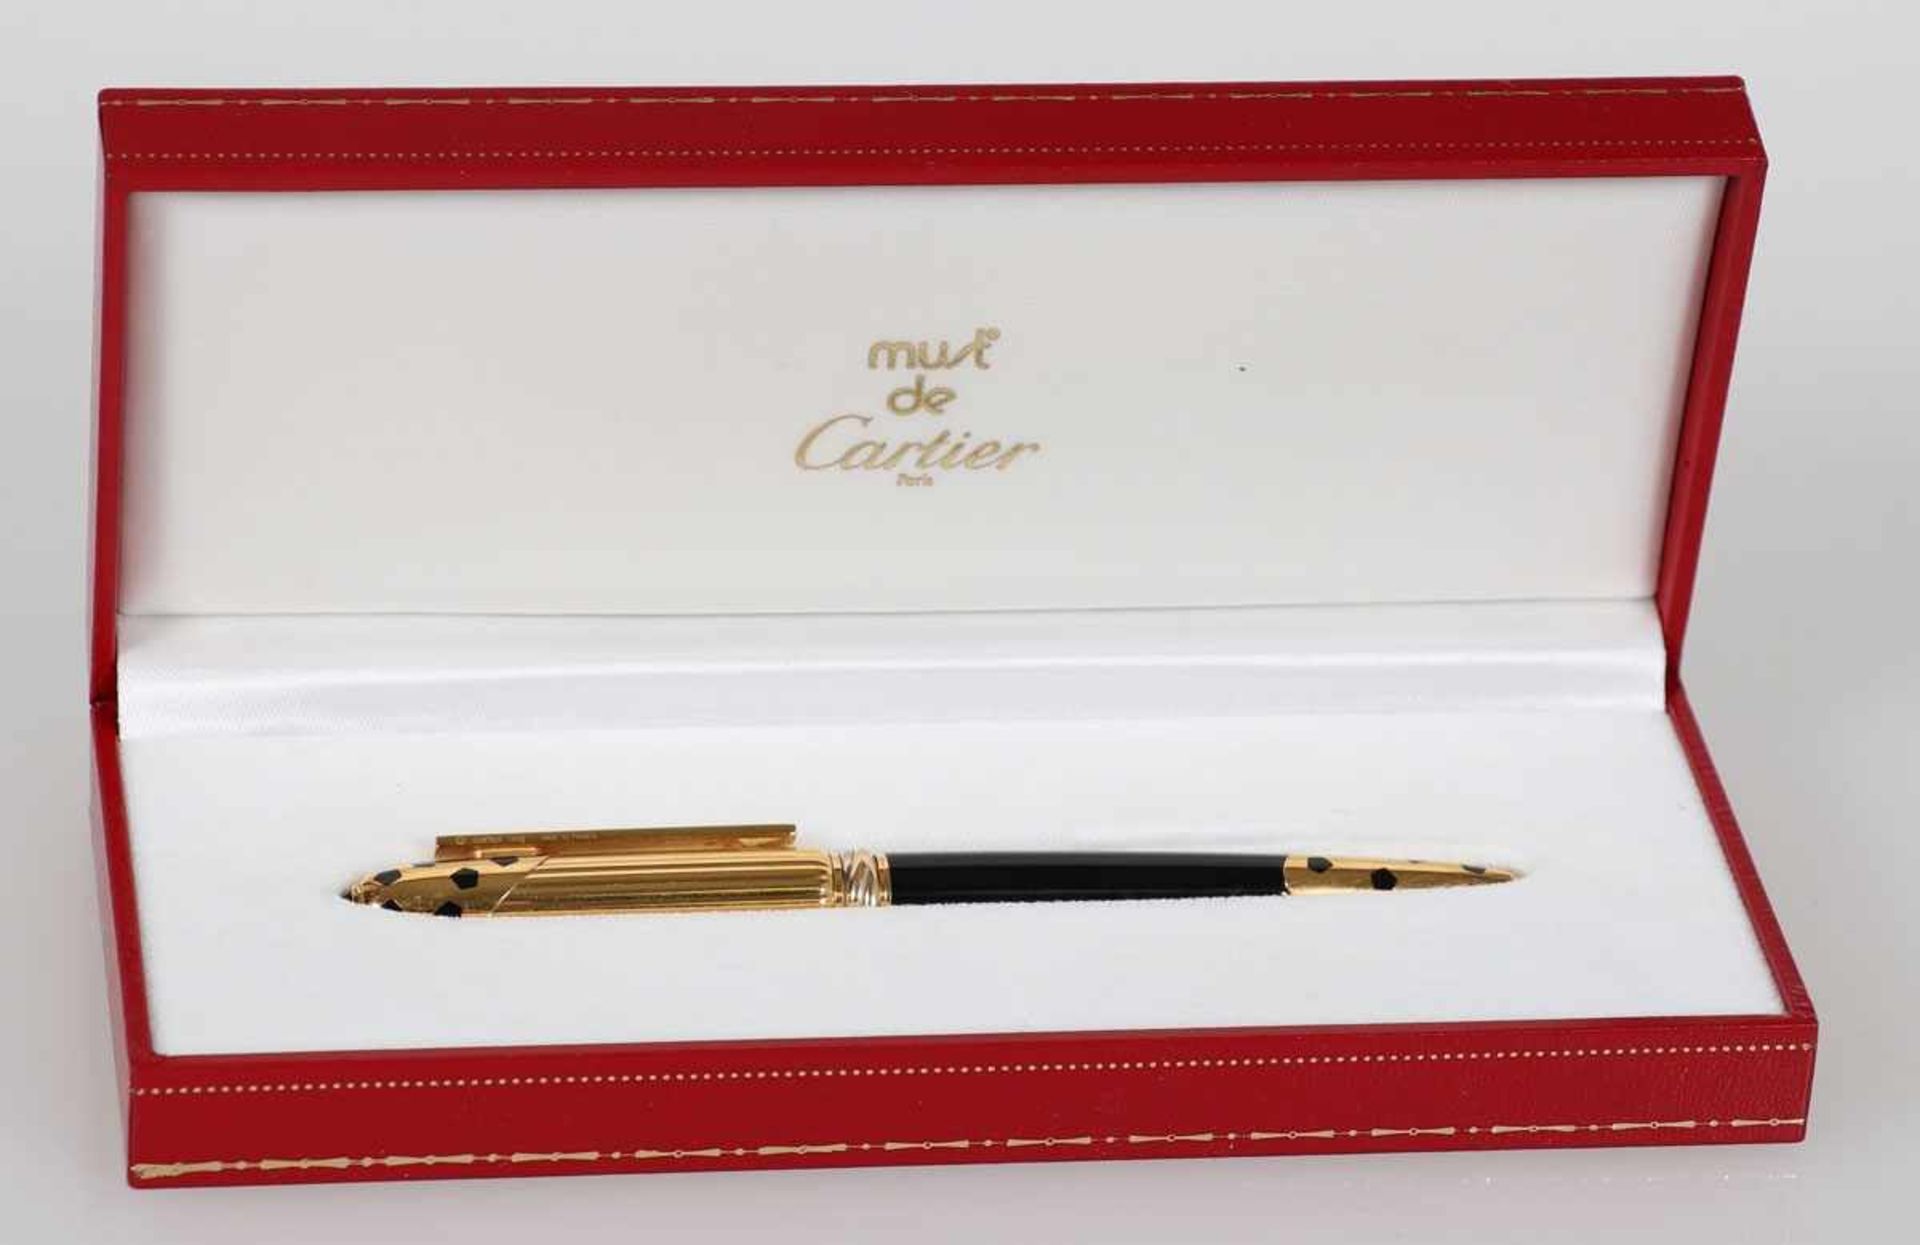 Cartier Kugelschreiber in EtuiParis, 1990. - Panthère - Vergoldet. Lack. L. 13 cm. Bez.: Panthère de